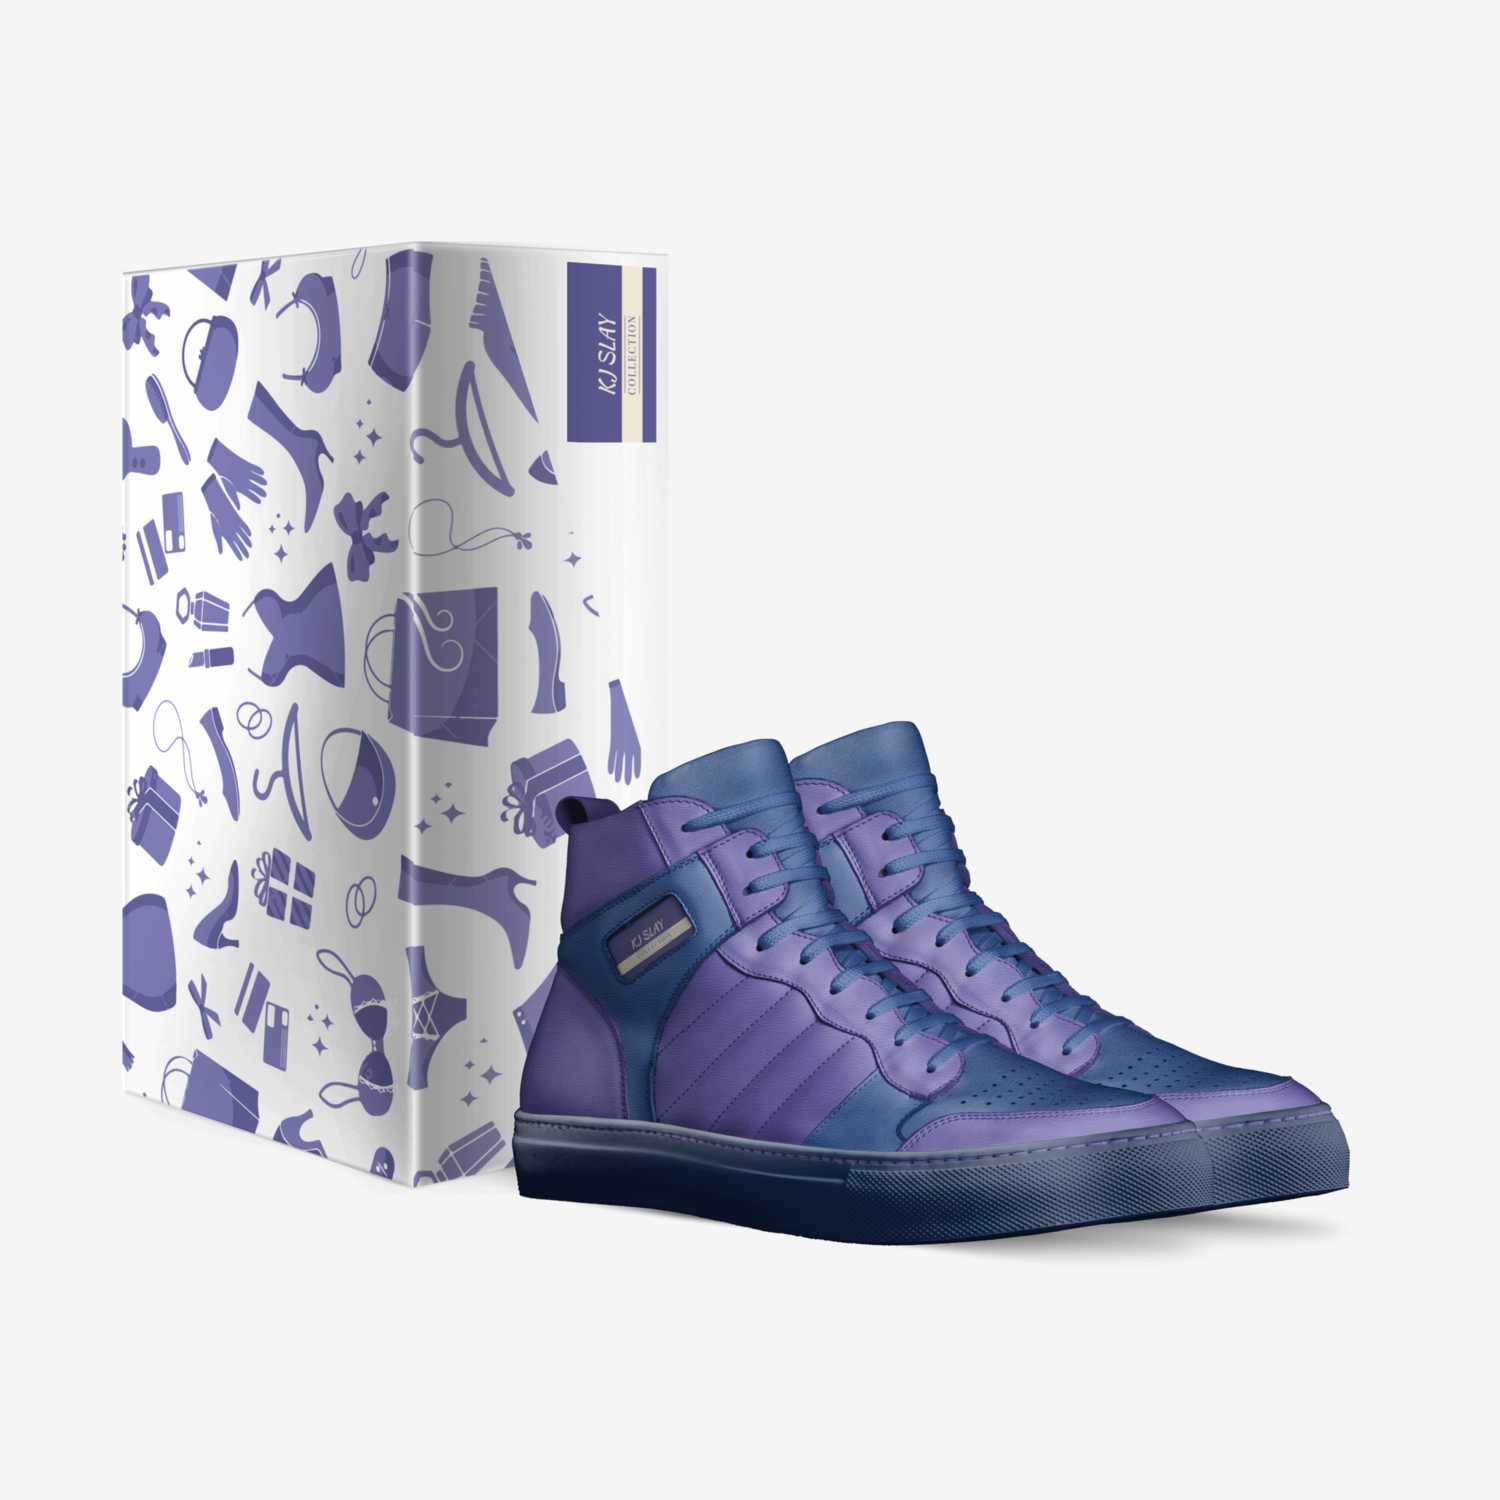 KJ SLAY  custom made in Italy shoes by Knhiya Johnson | Box view